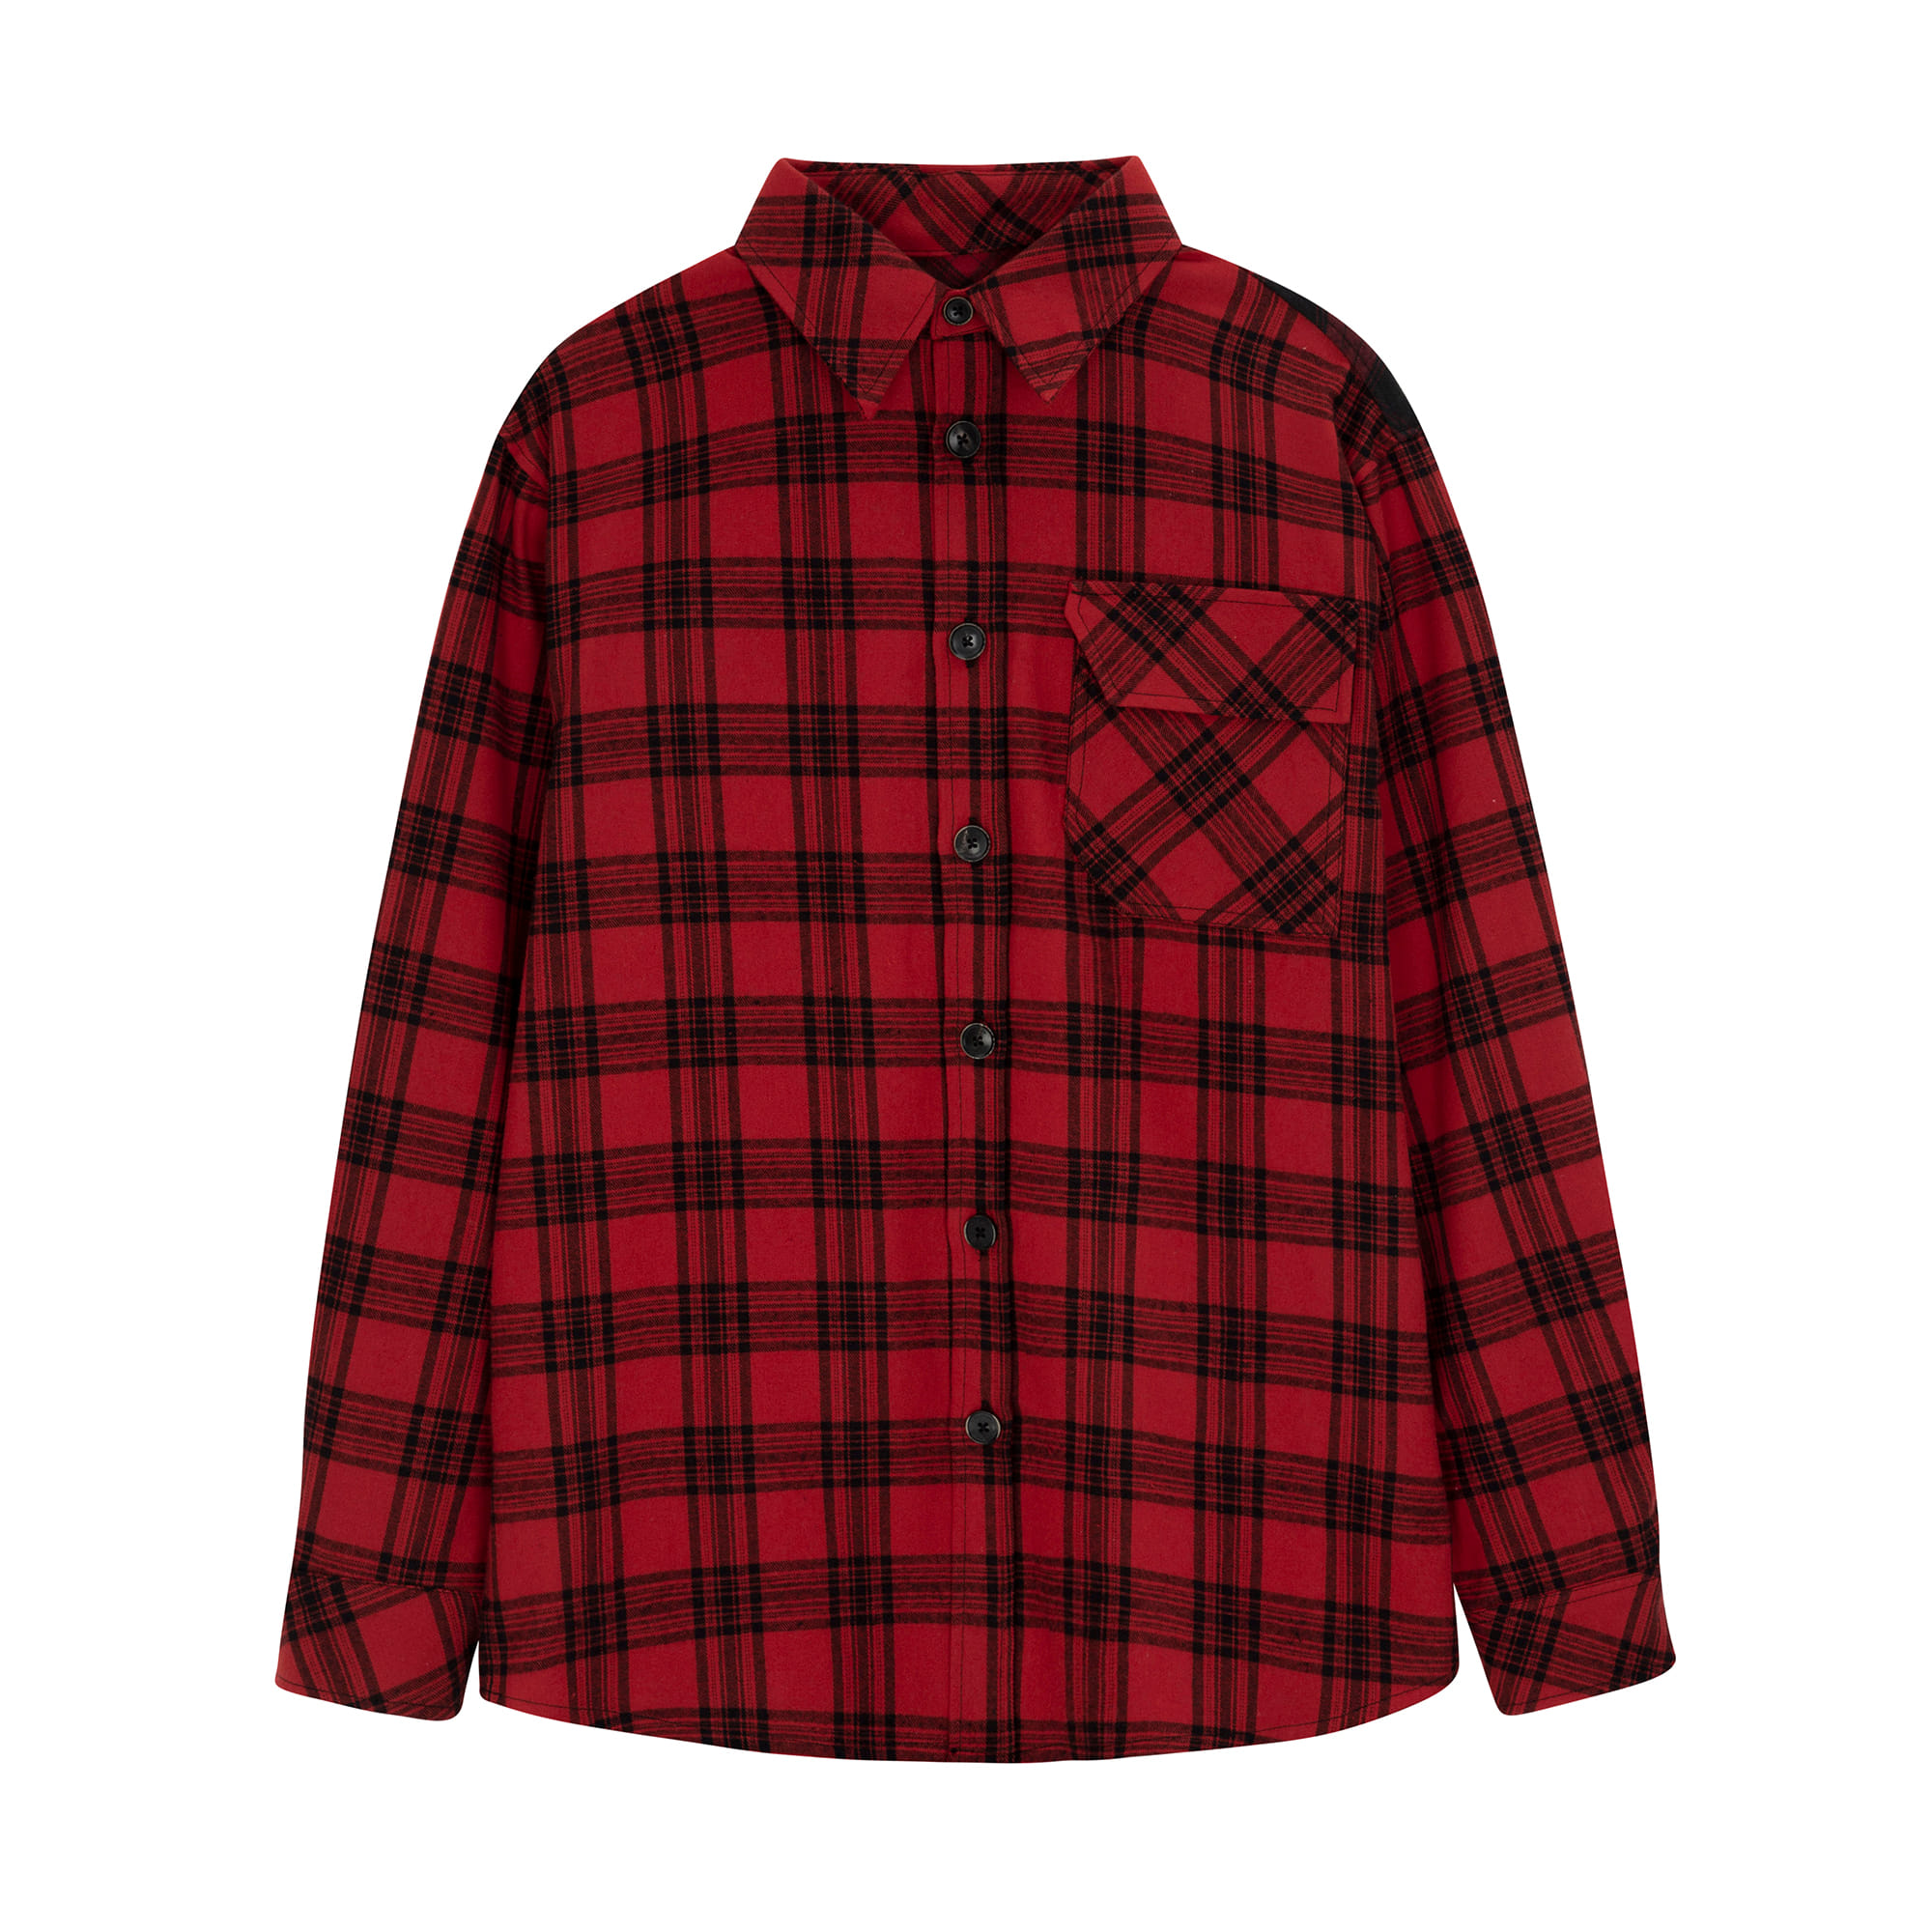 RTW-SH127 : Fabric Mix Back Logo Oversized Red Shirt│Red